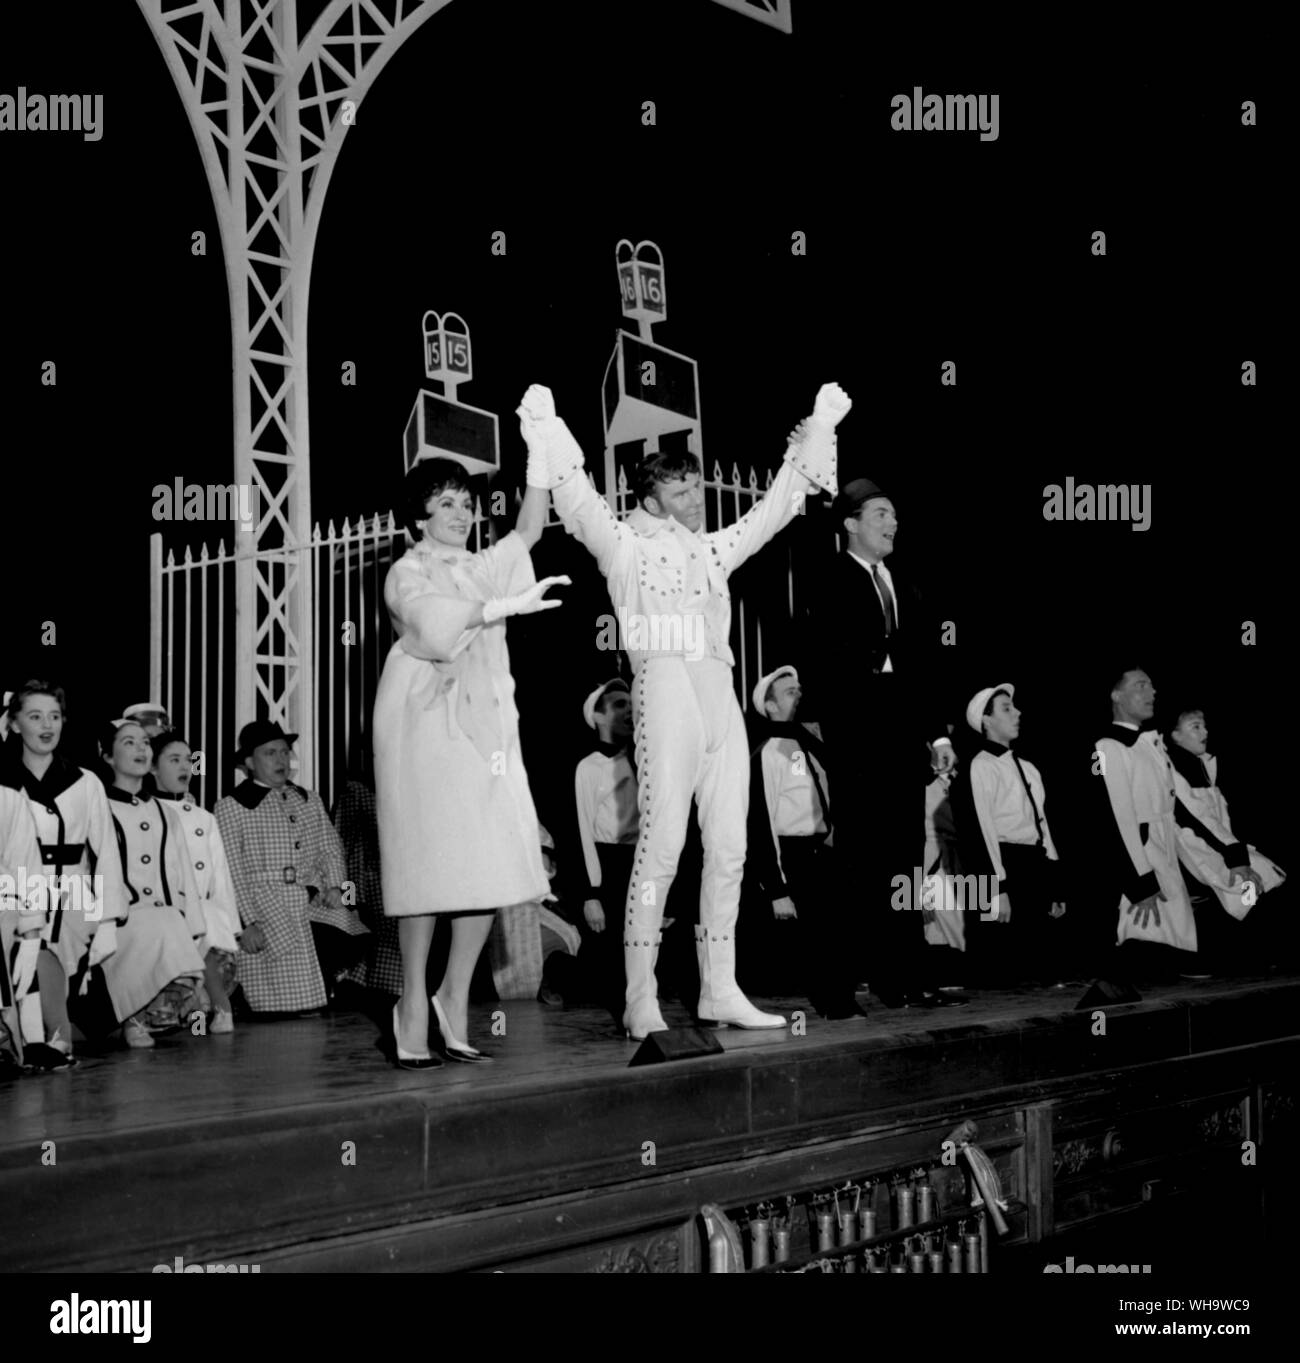 15 Giugno 1961: Marty Wilde (al centro della scena in bianco) stelle nel musical, Bye, Bye Birdie a Londra, Haymarket Theatre. Alla sua sinistra è Chita Rivera e alla sua destra, Peter Marshall. Wilde svolge un rock 'n' roll star nel film. Foto Stock